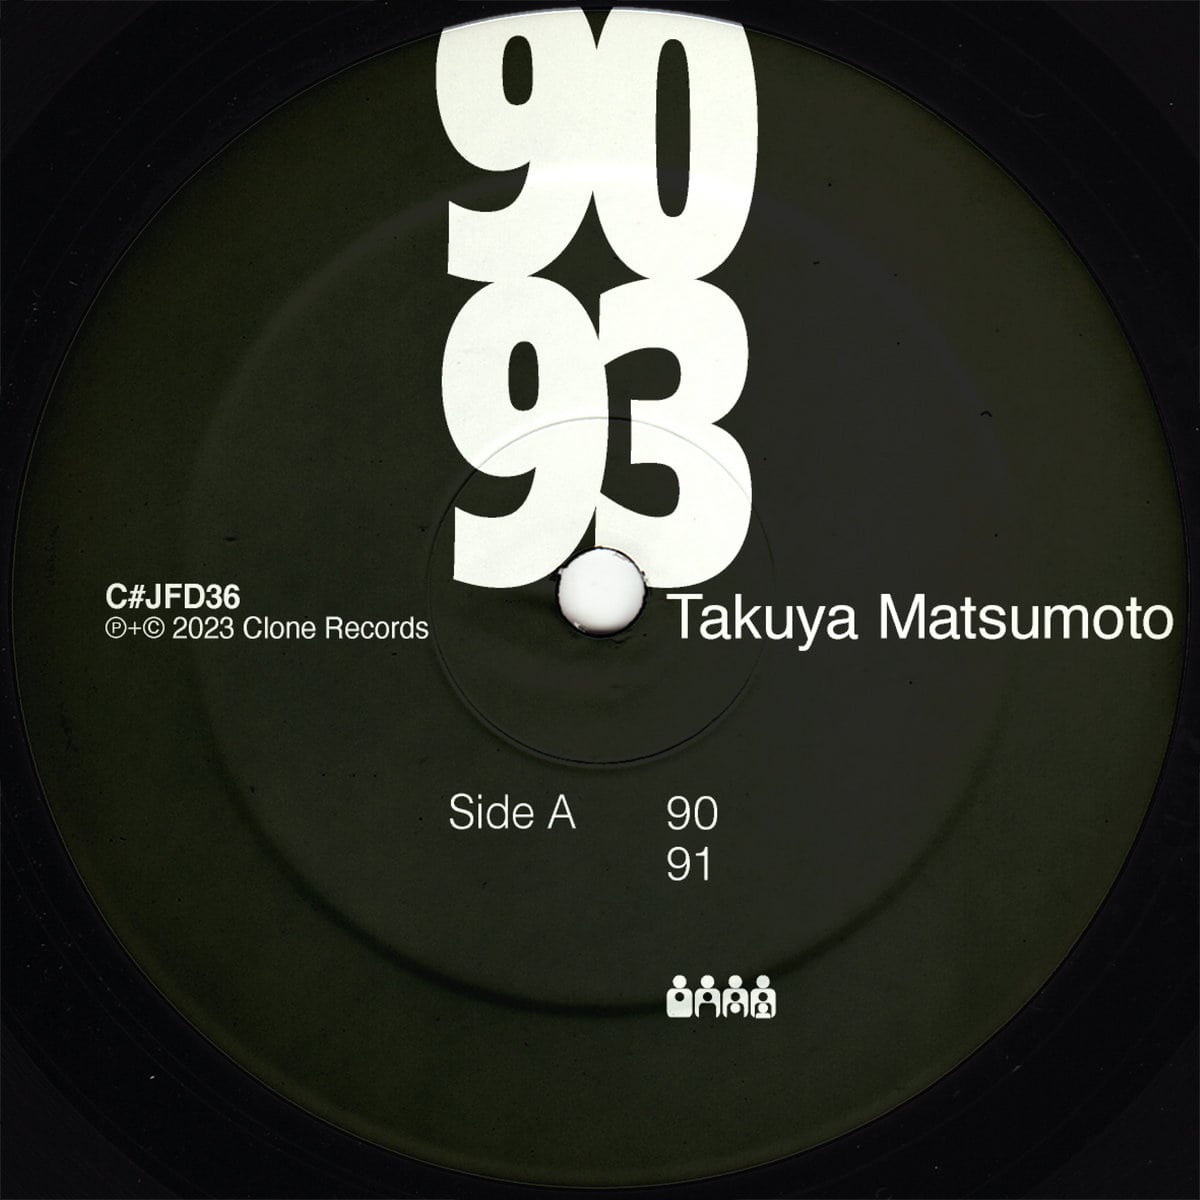 Download Takuya Matsumoto - 90 - 93 on Electrobuzz